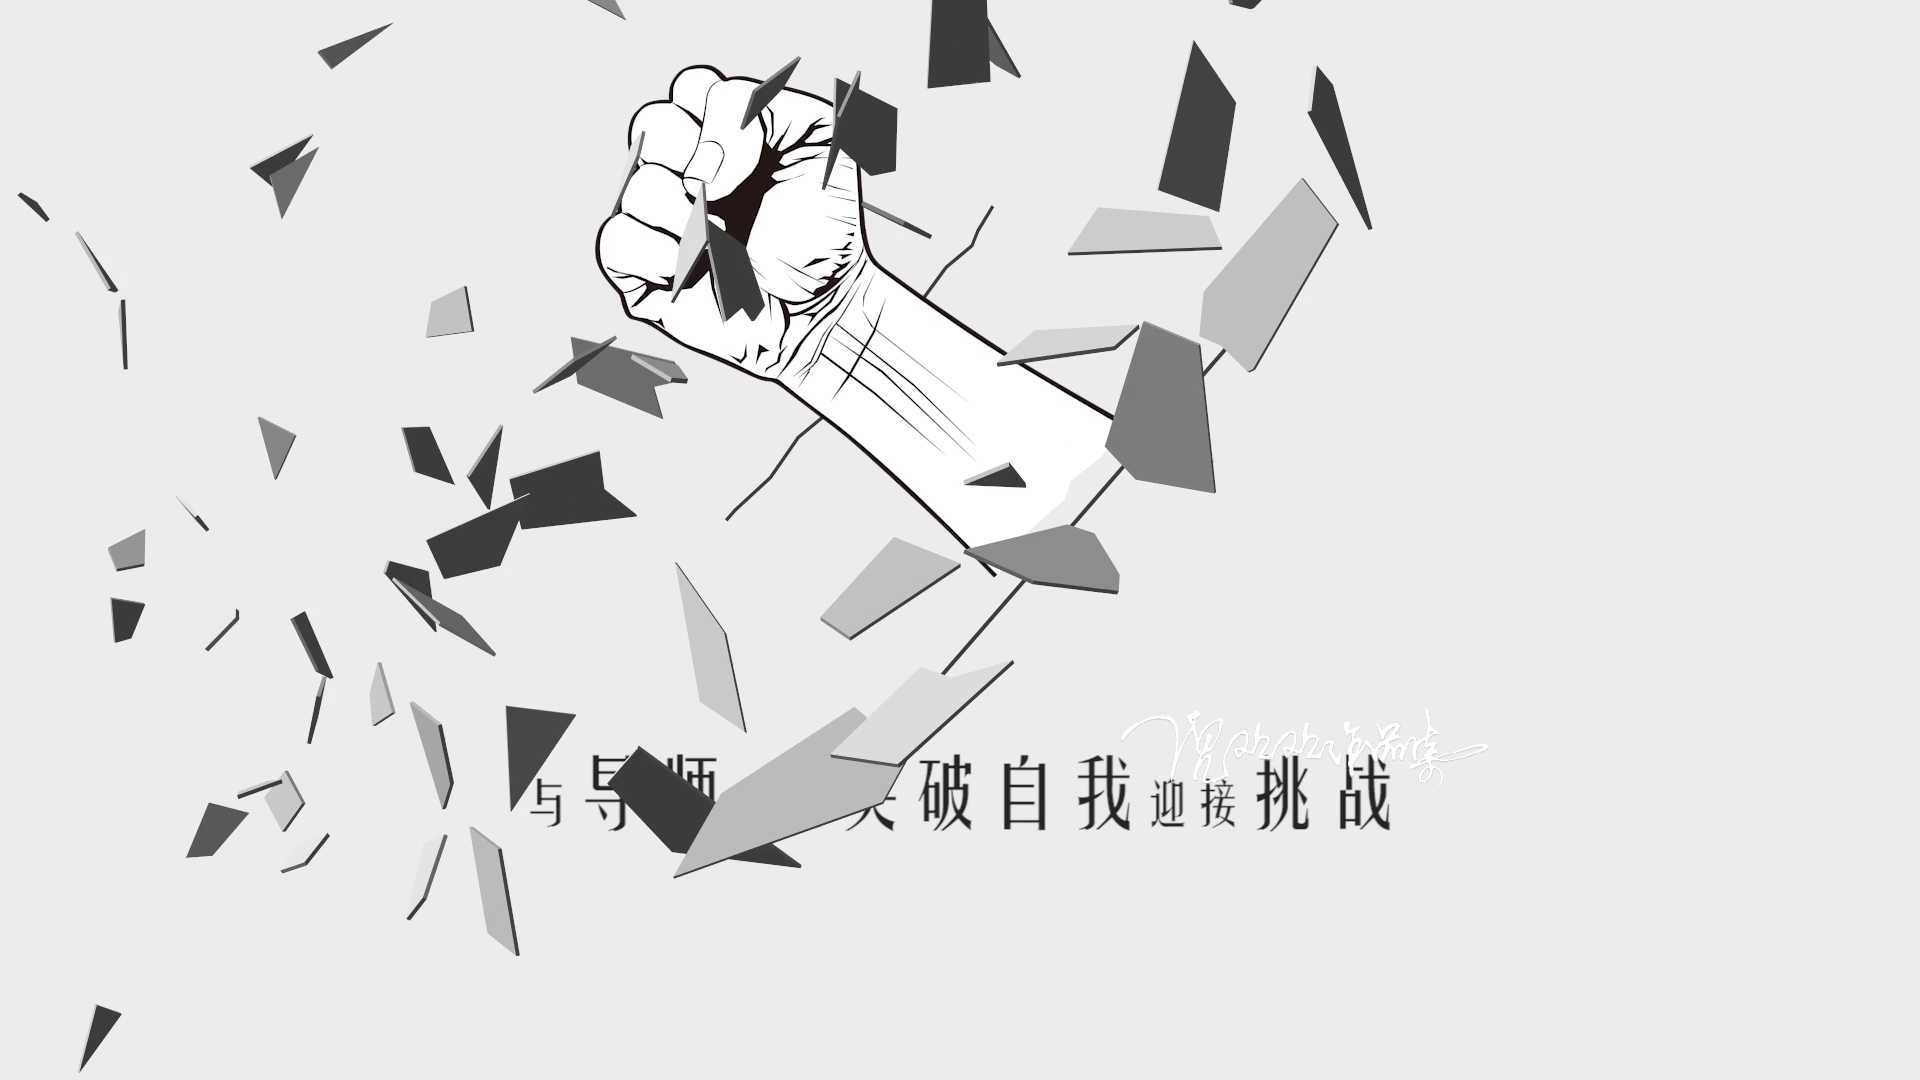 【MG动画】四川青年创新创业大赛宣传片